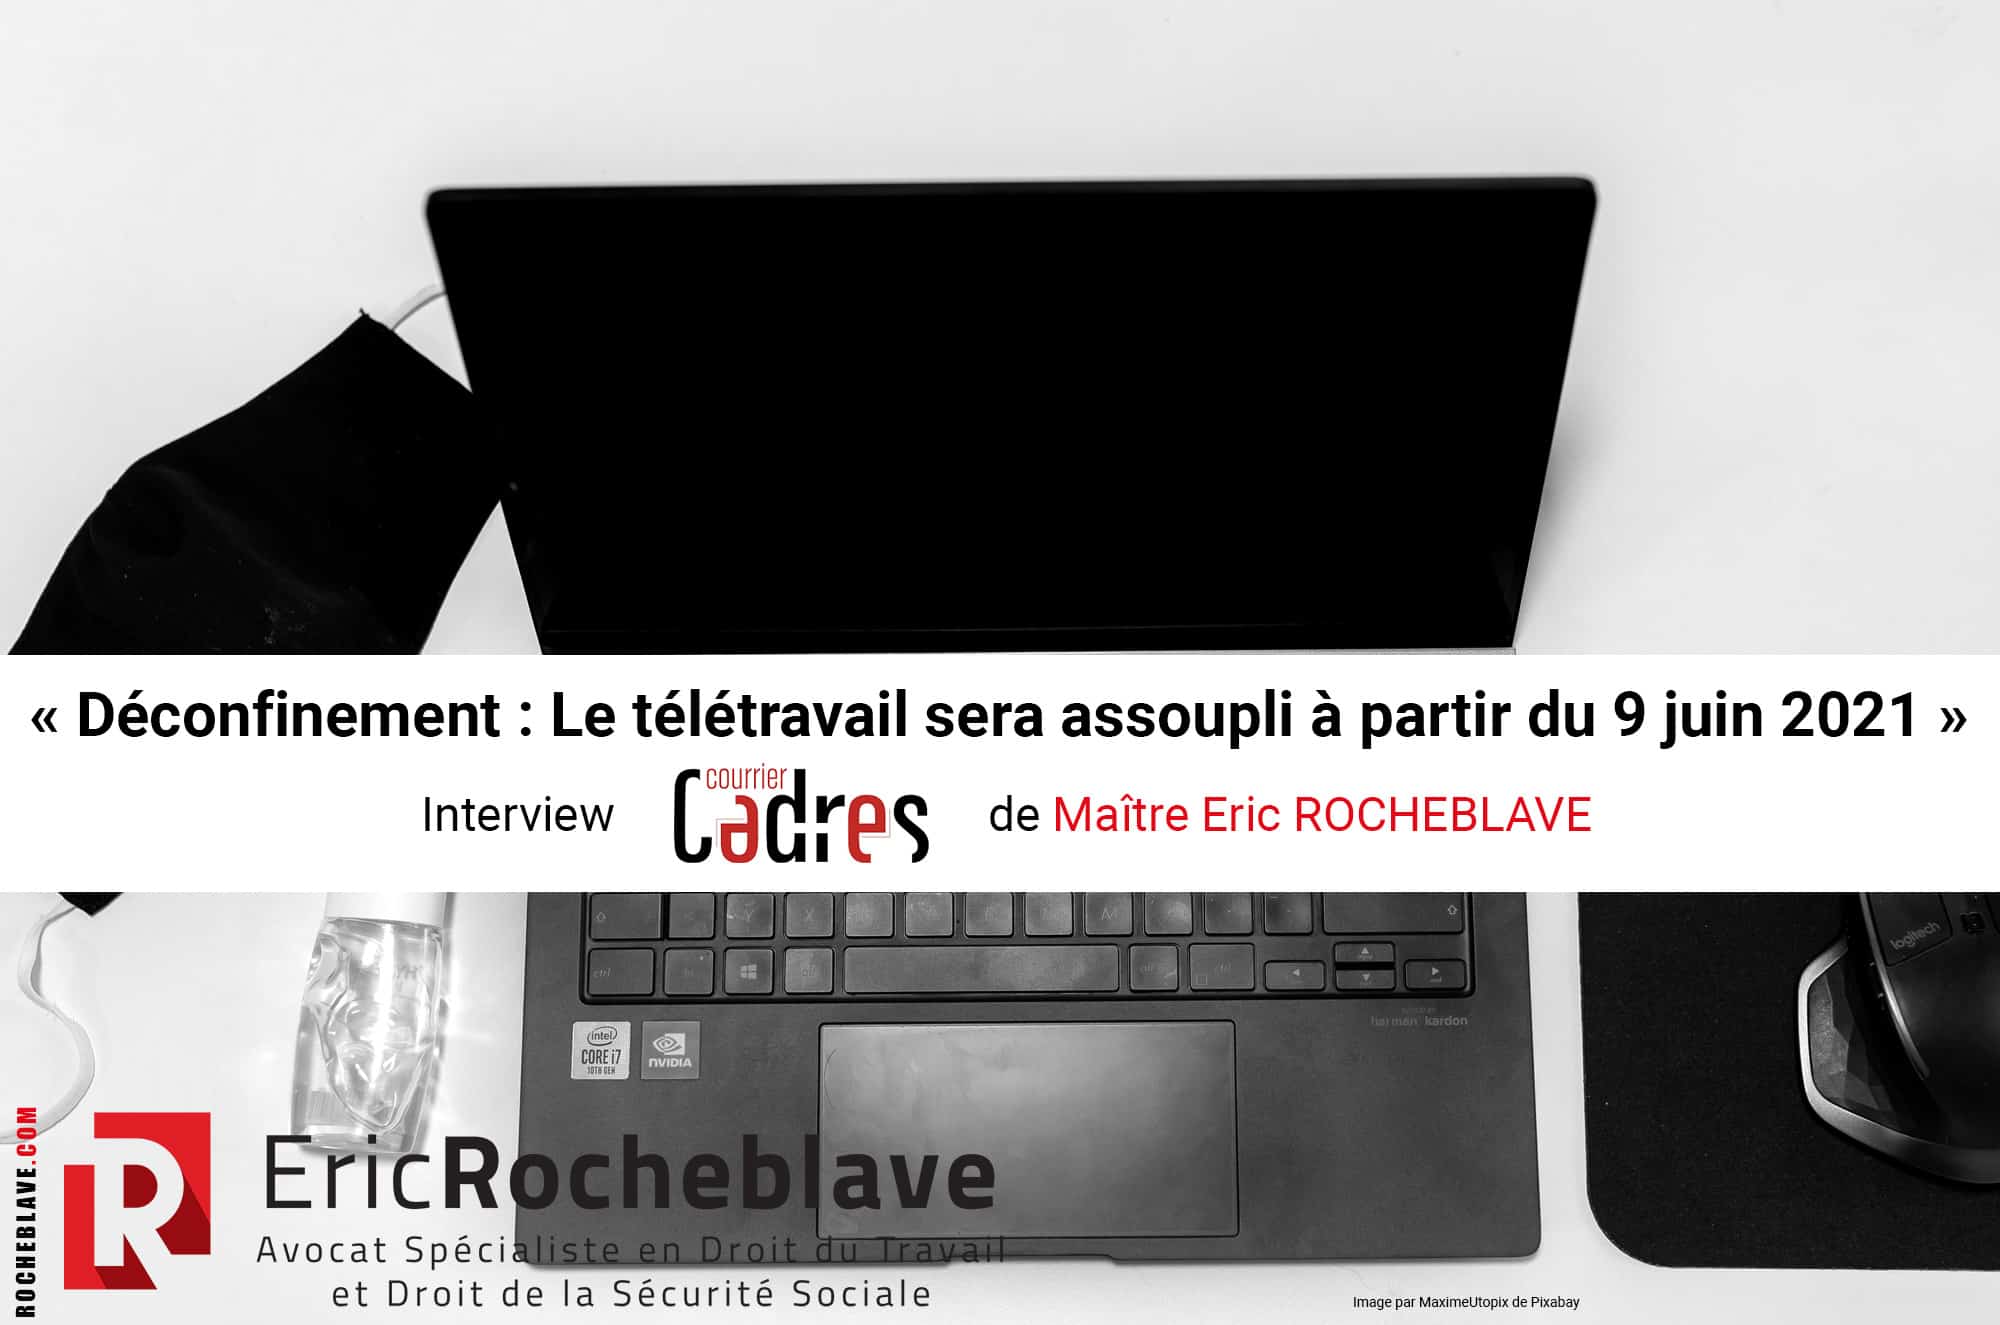 « Déconfinement : Le télétravail sera assoupli à partir du 9 juin 2021 » Interview Courrier Cadres de Maître Eric ROCHEBLAVE